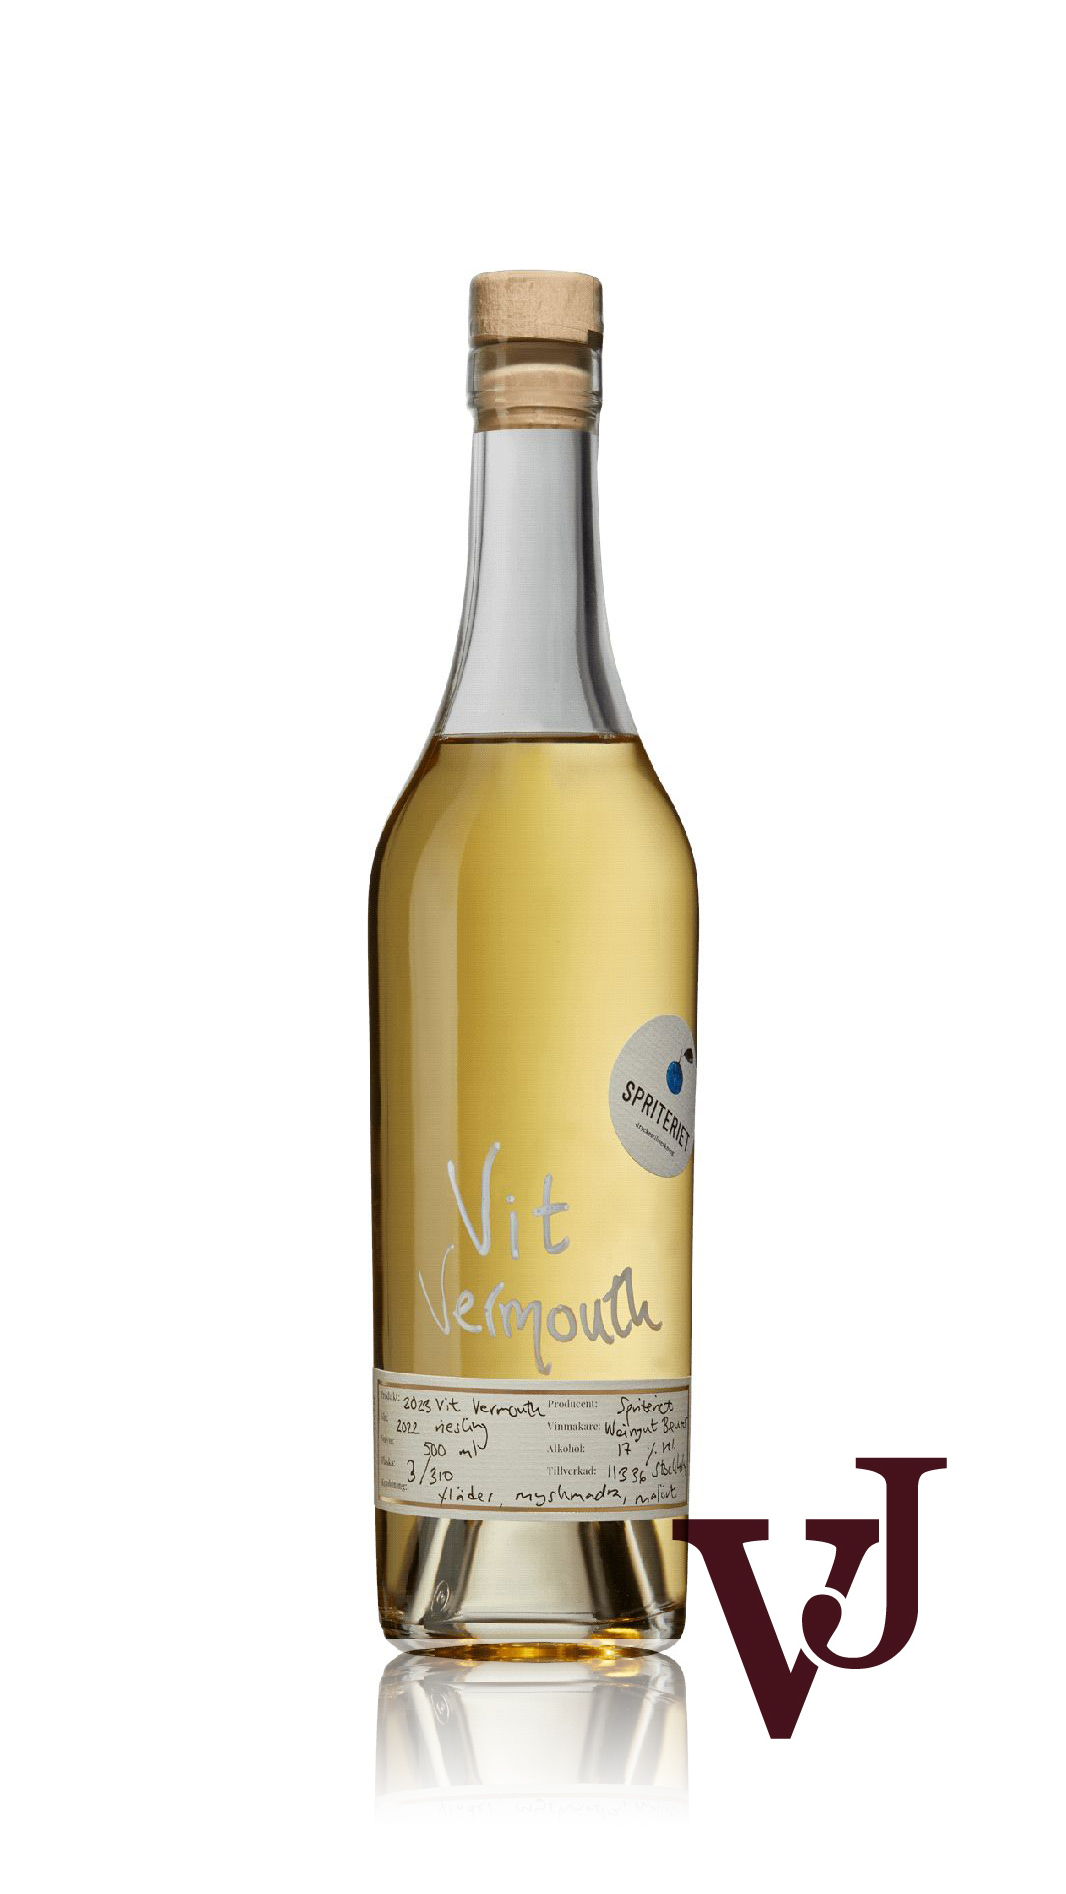 Vitt Vin - Spriteriet Vit Vermouth 2023 artikel nummer 3206602 från producenten Spriteriet från Sverige.